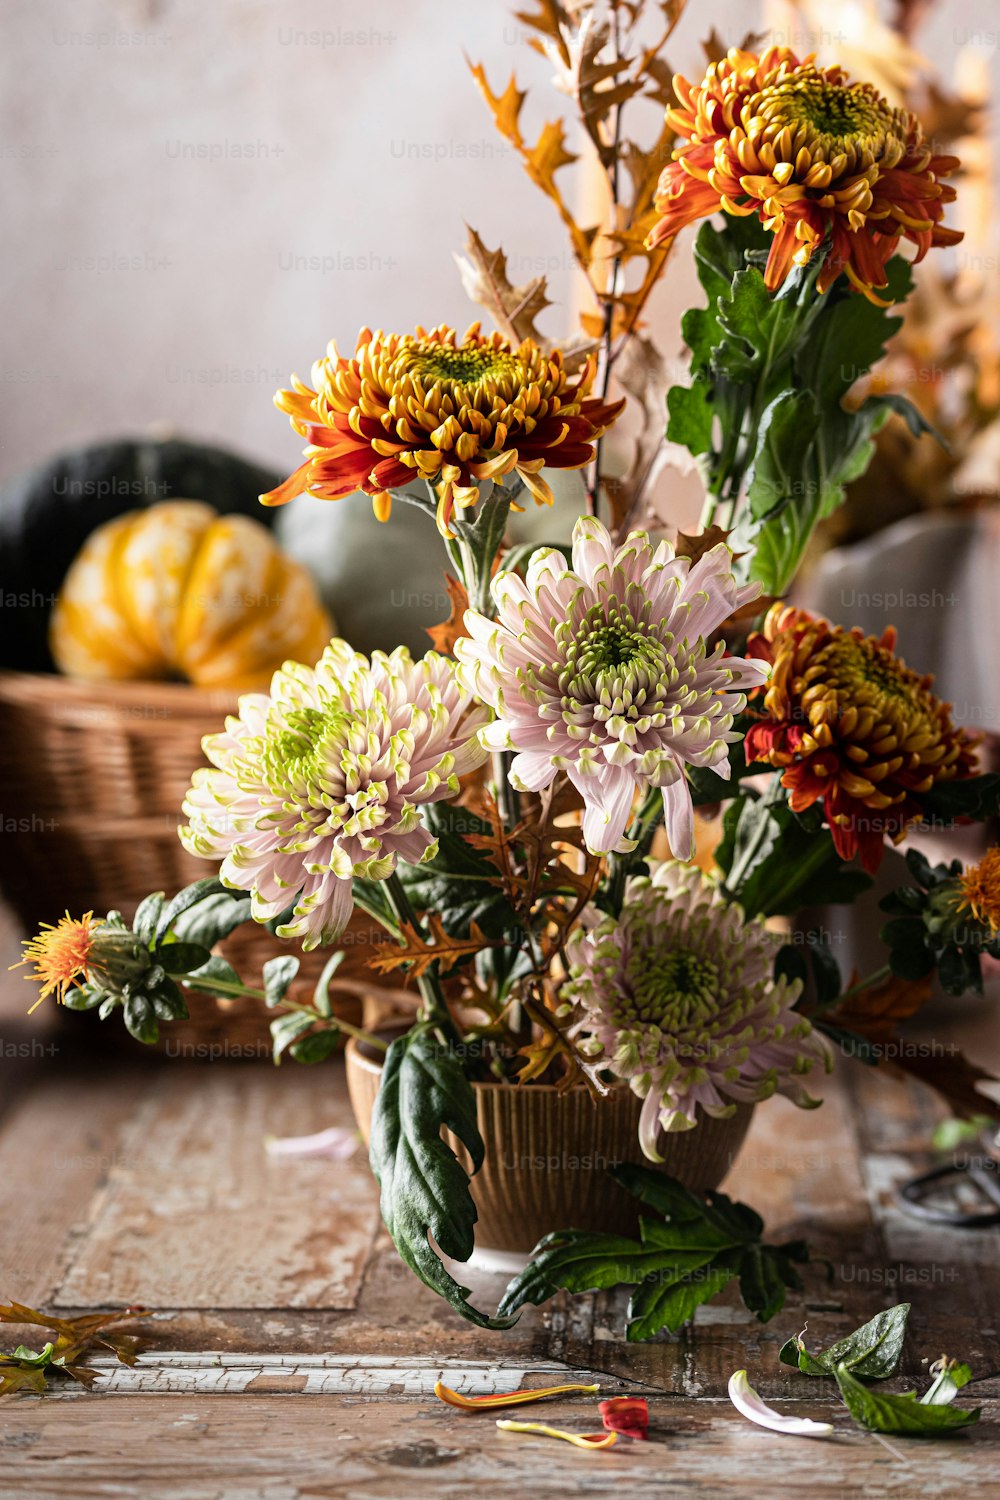 Un jarrón lleno de muchas flores encima de una mesa de madera